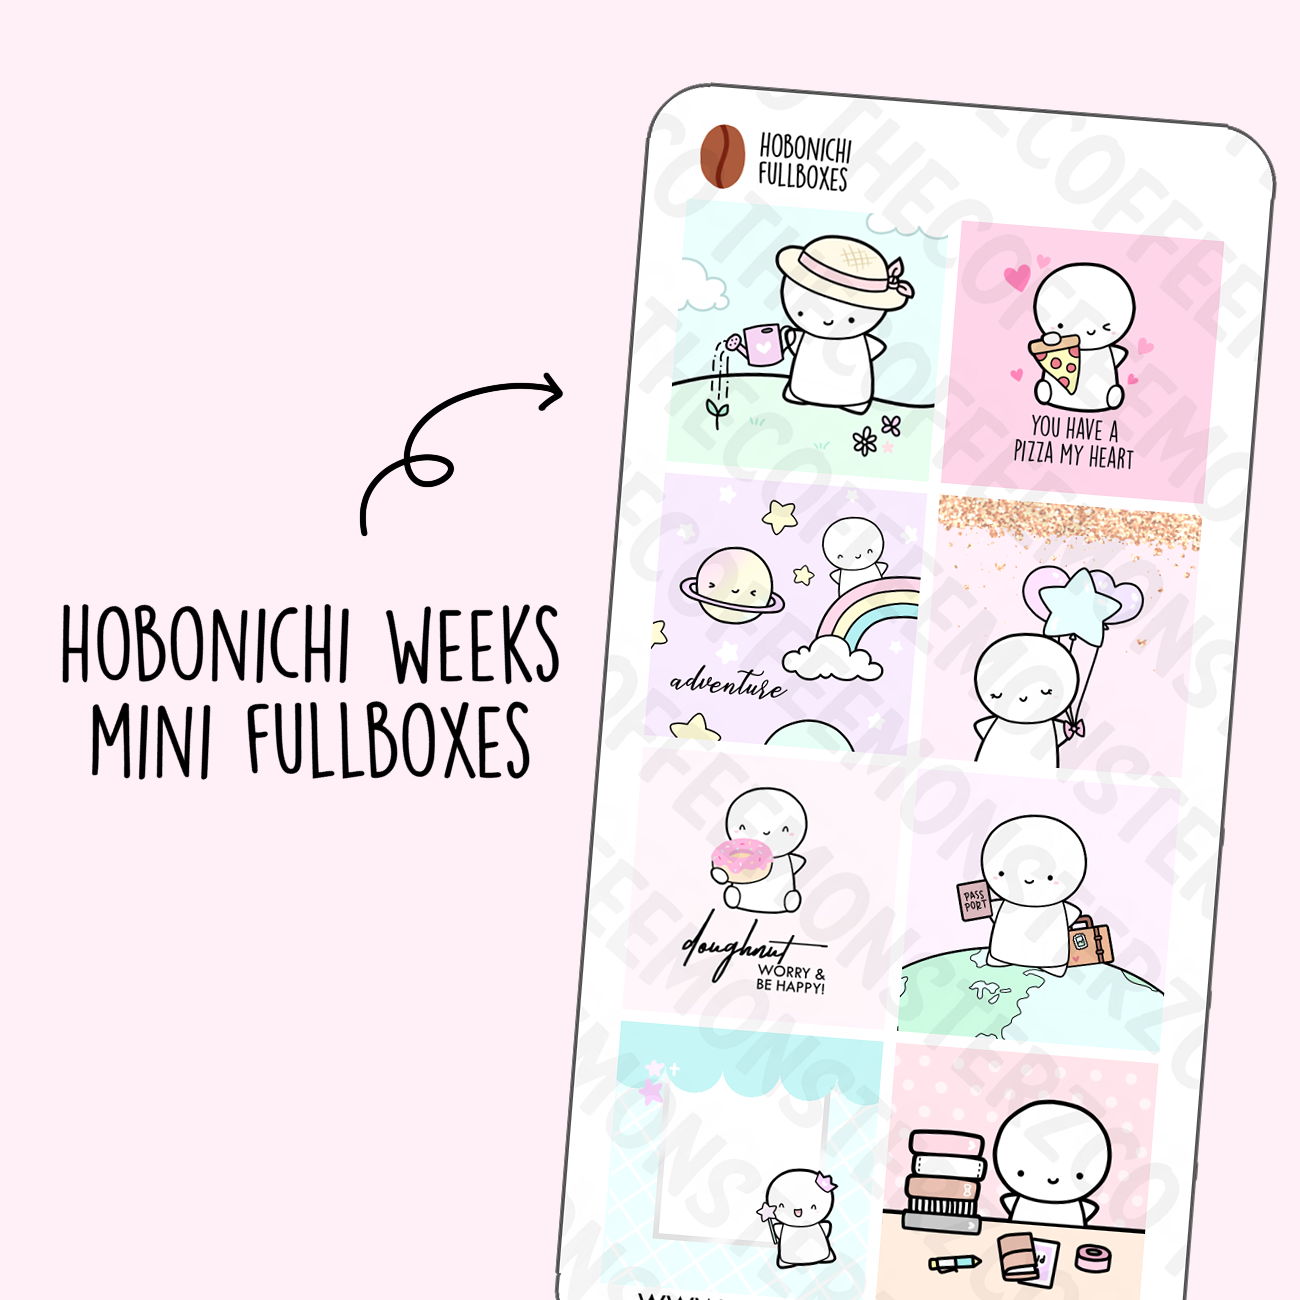 Hobonichi Weeks Mini Fullboxes, TheCoffeeMonsterzCo